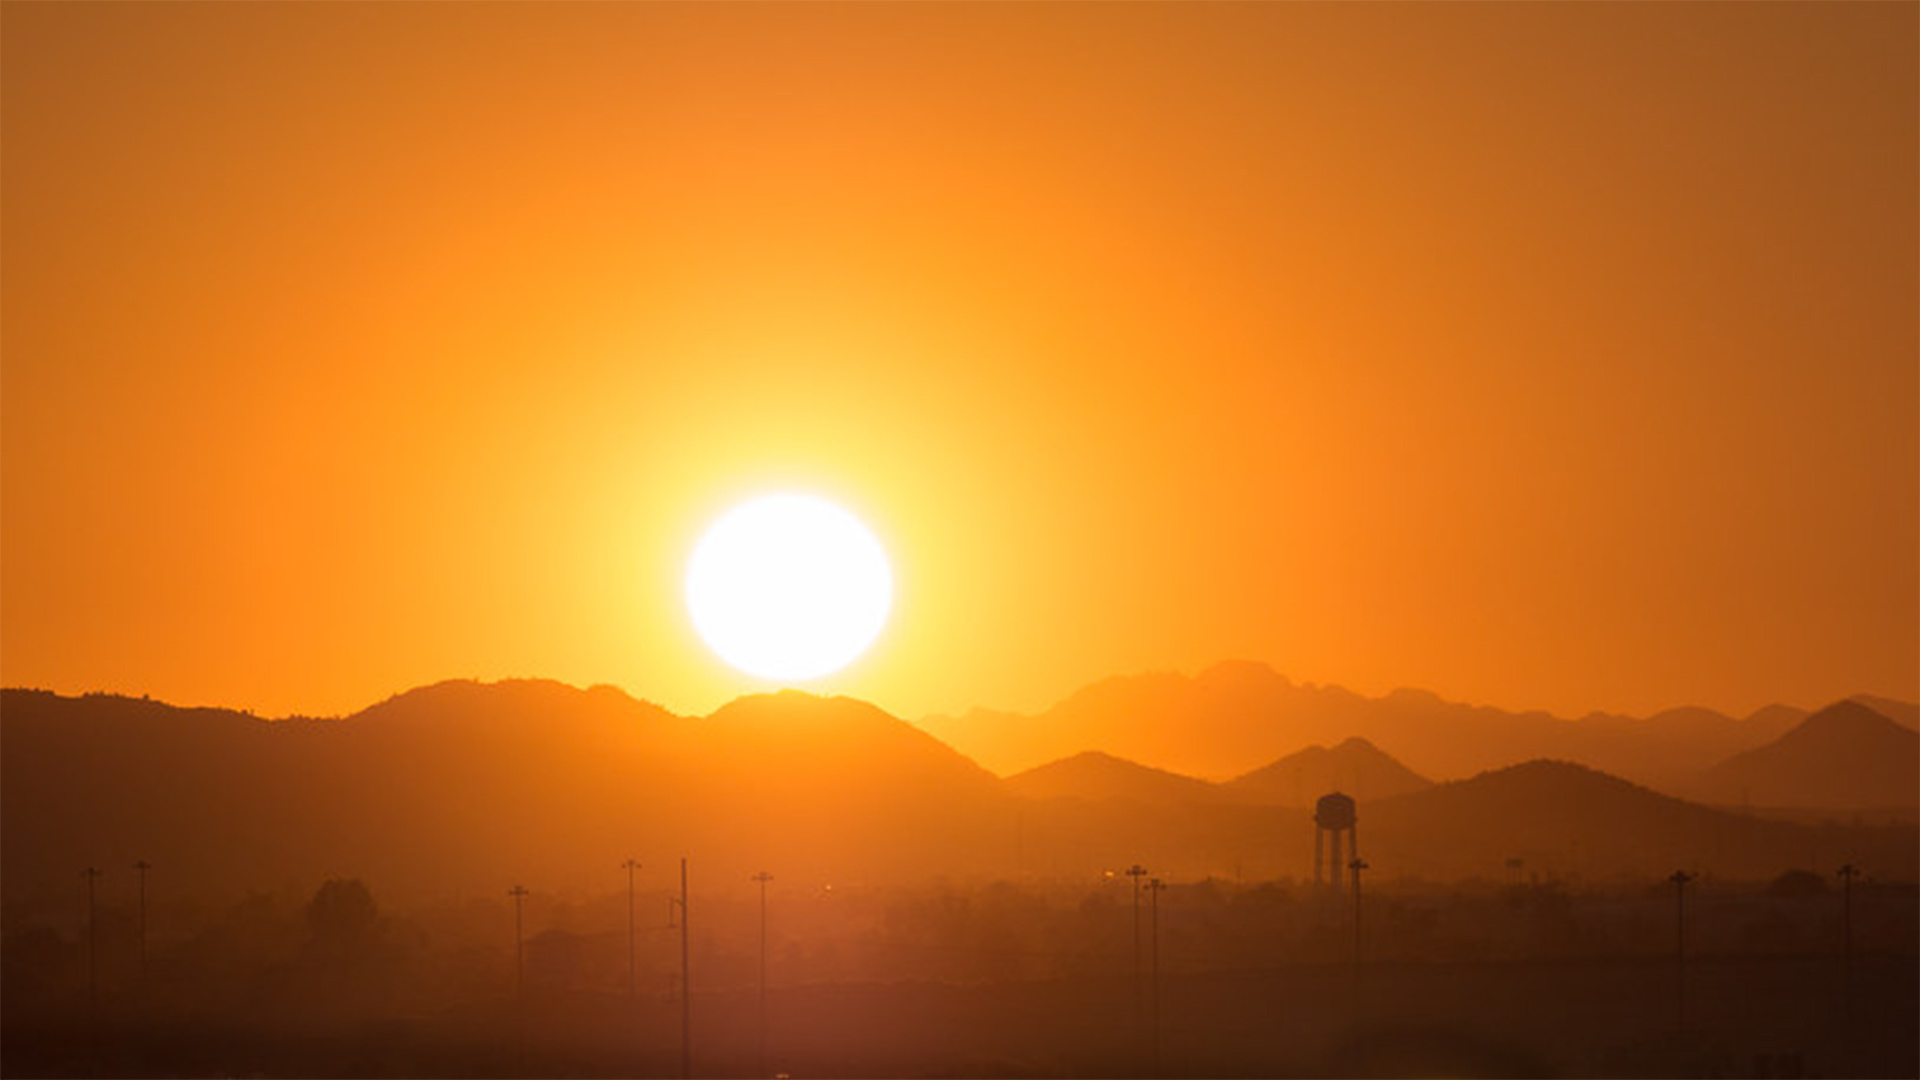 Rural Arizona sunset.